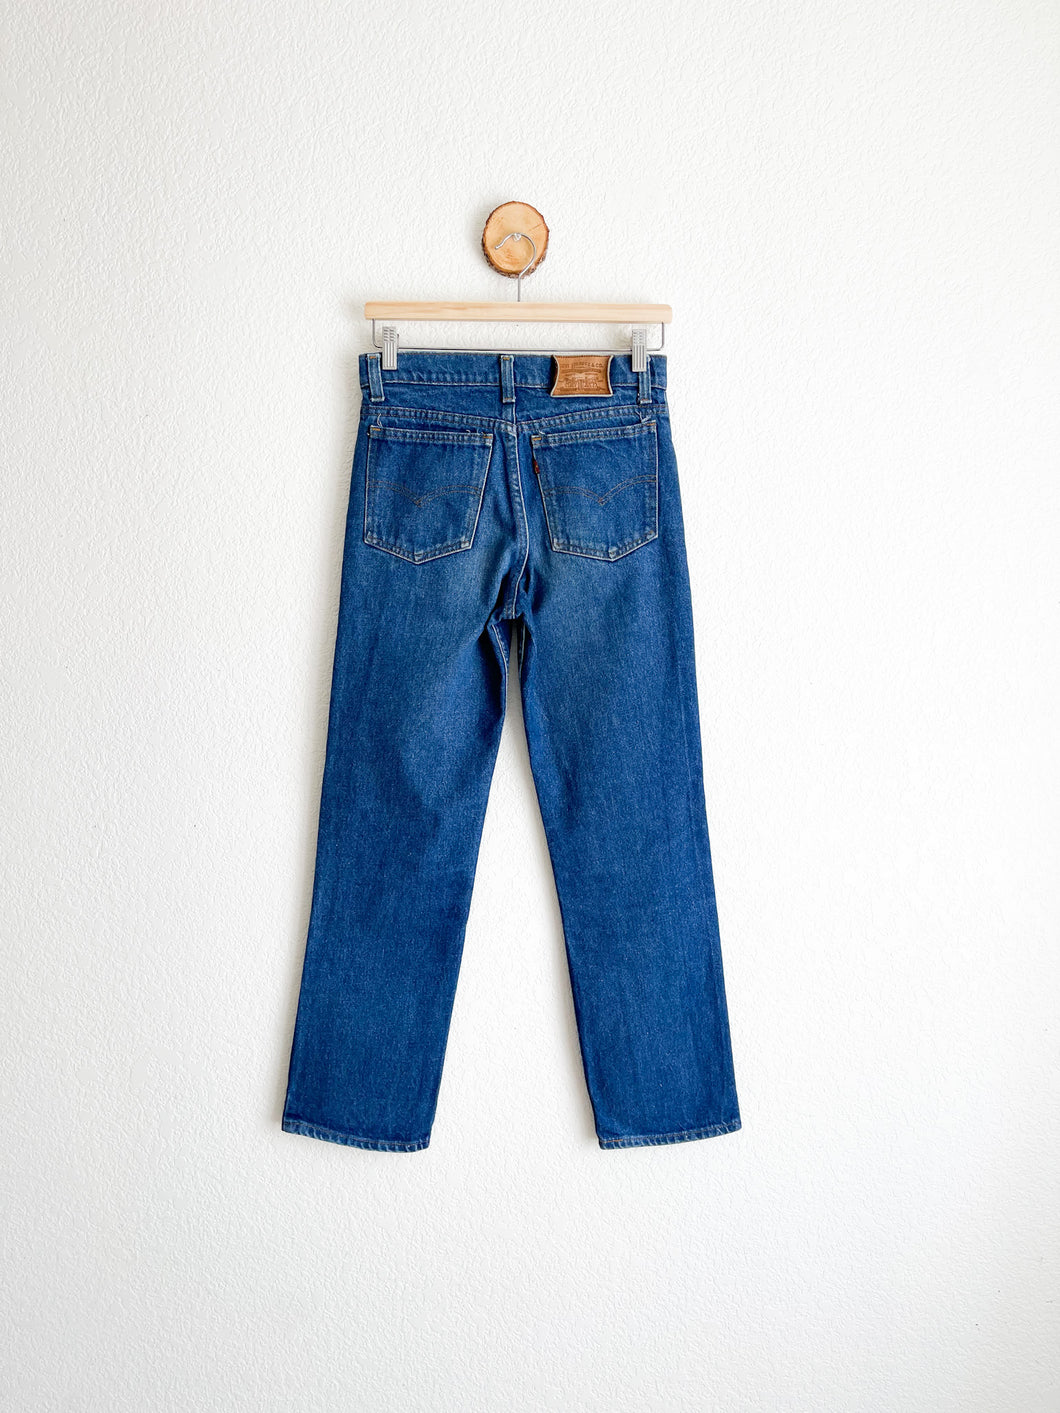 Vintage Levi's Jeans - 28